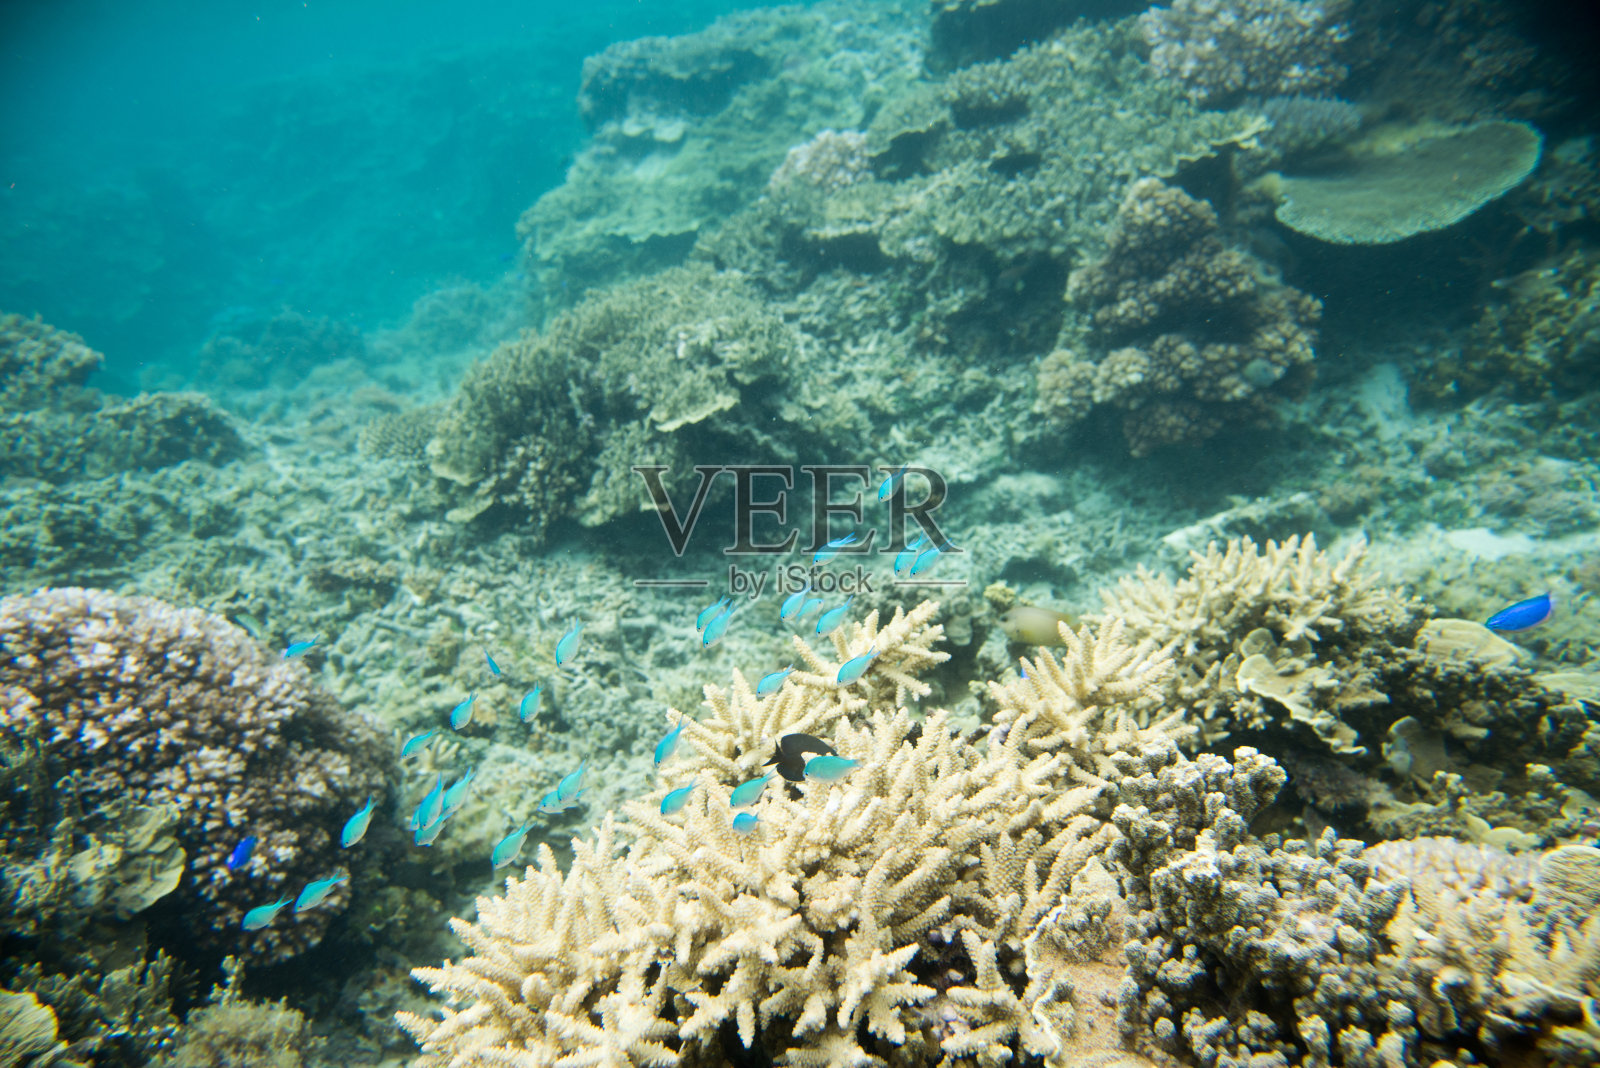 星盘礁的绿铬照片摄影图片